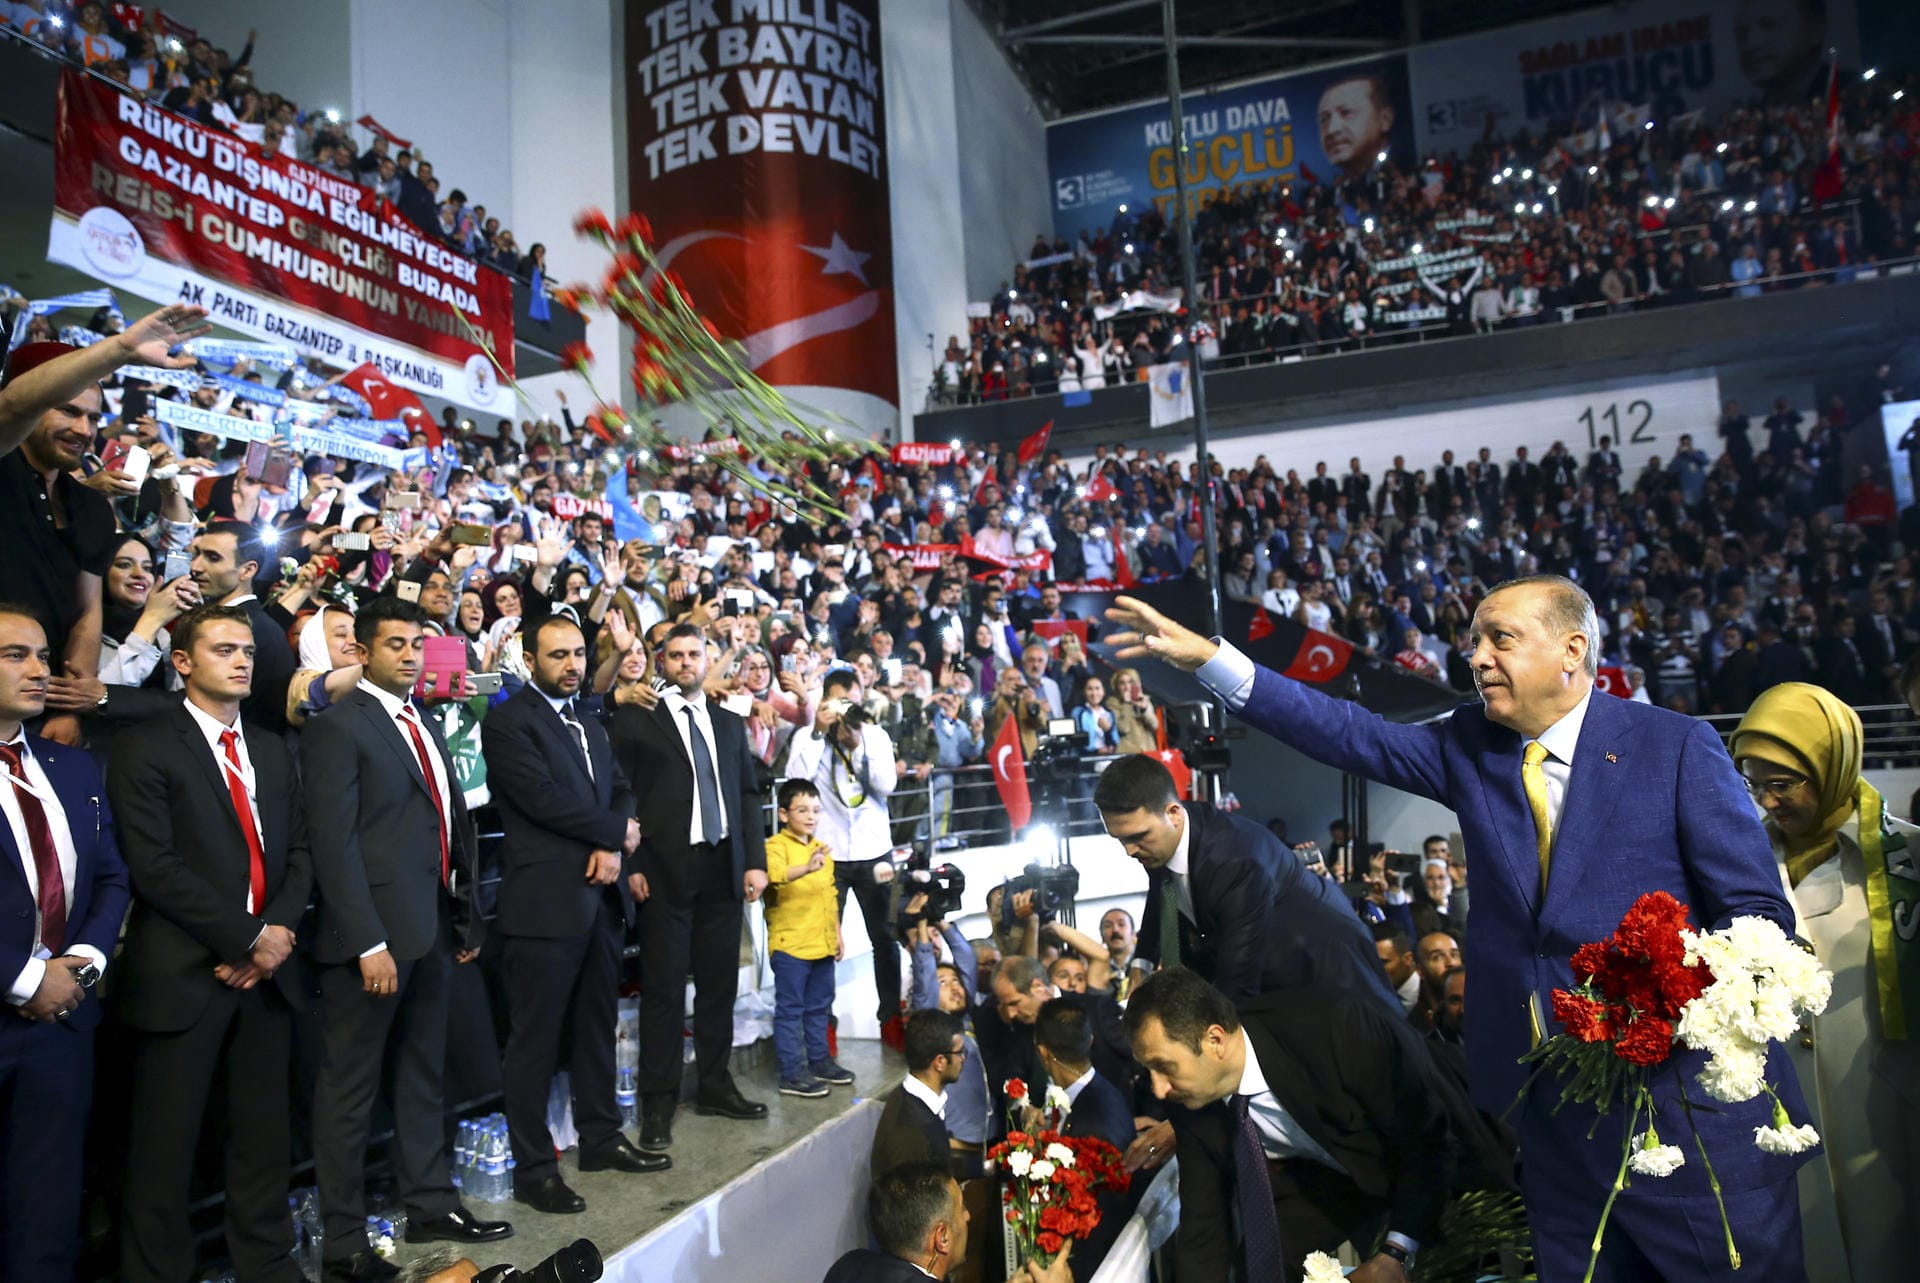 Der türkische Präsident Recep Tayyip Erdogan hat einen rasanten politischen Aufstieg hinter sich. Seine Karriere in Bildern: